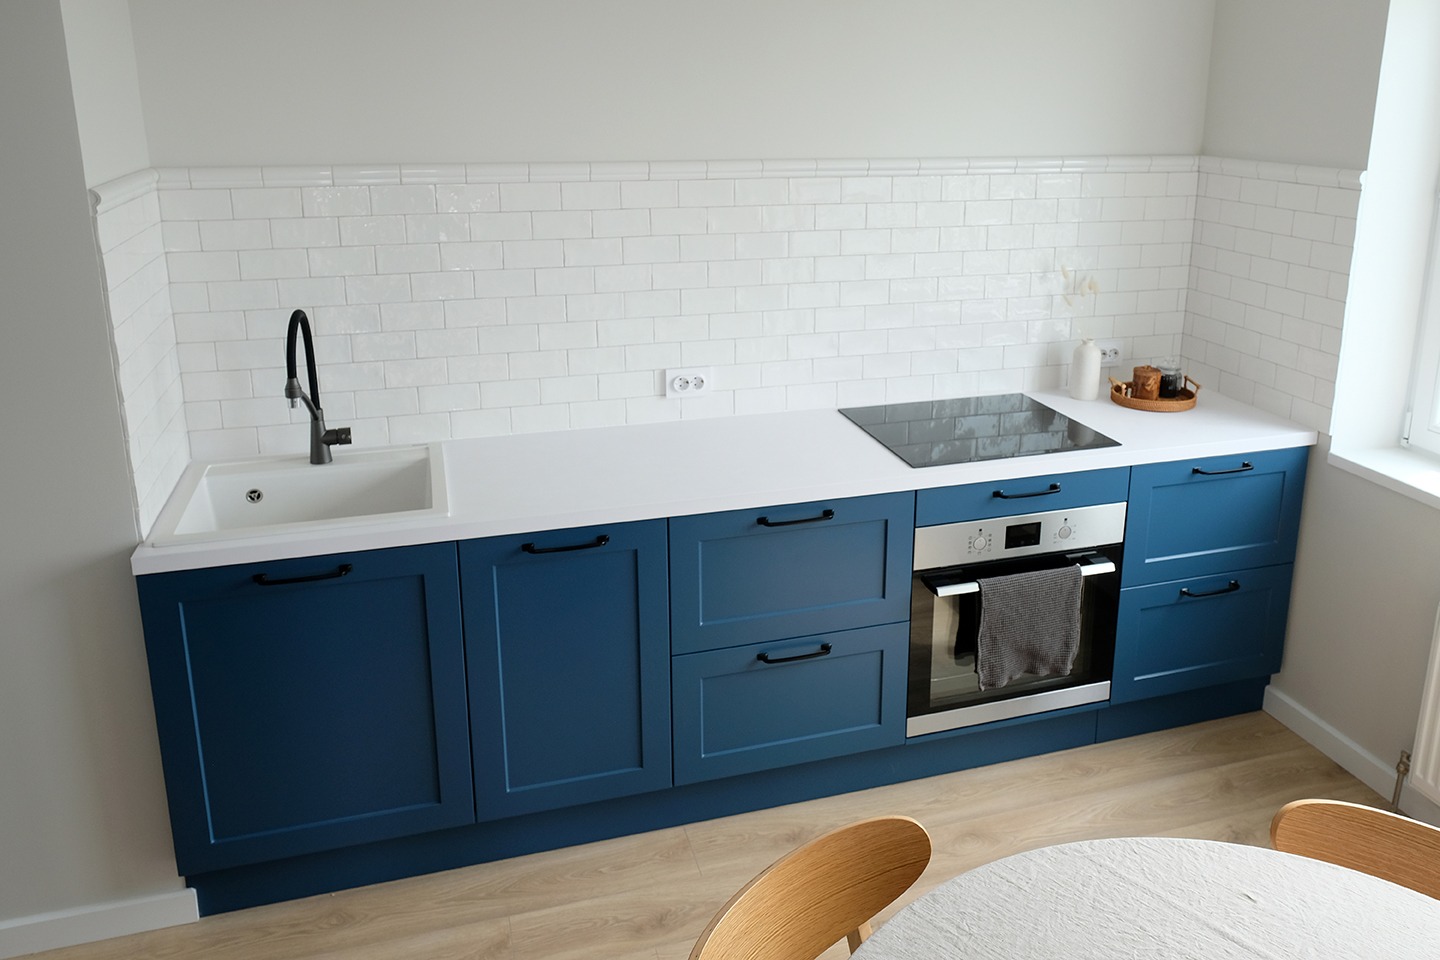 Scandinvain style blue kitchen furniture. Nordic small kitchen interior design